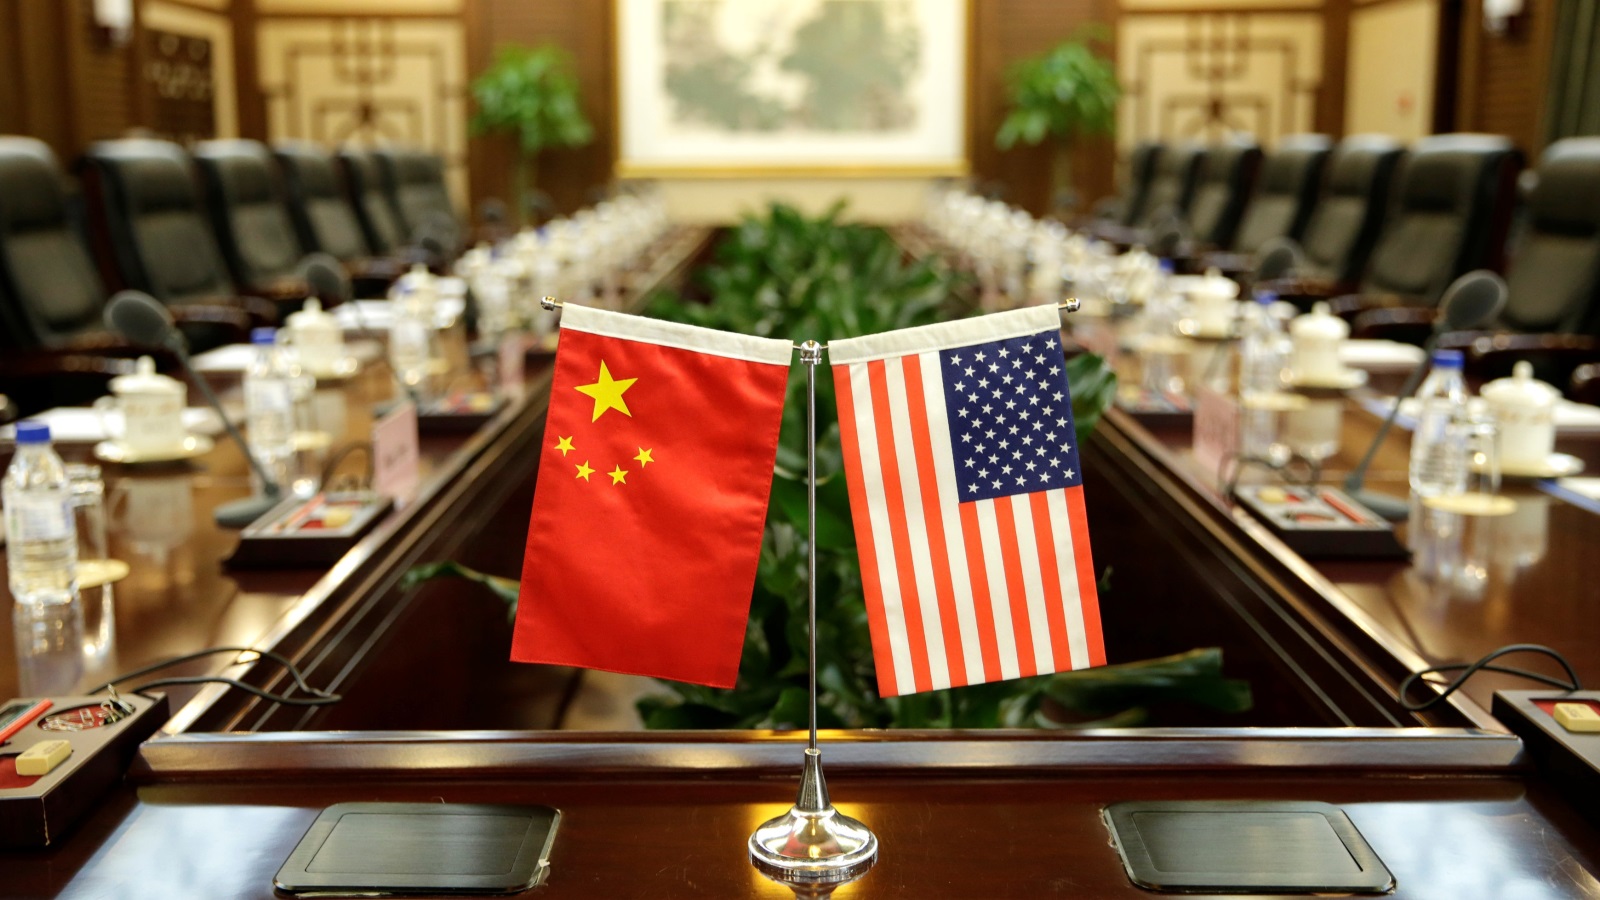 أعربت الولايات المتحدة الأمريكية مؤخراً عن قلقها إزاء محاولة الصين الحصول على أسرار صناعاتها التكنولوجية، واعتبرتها الأولى محاولة سرقة توترت على إثرها العلاقات بين الطرفين